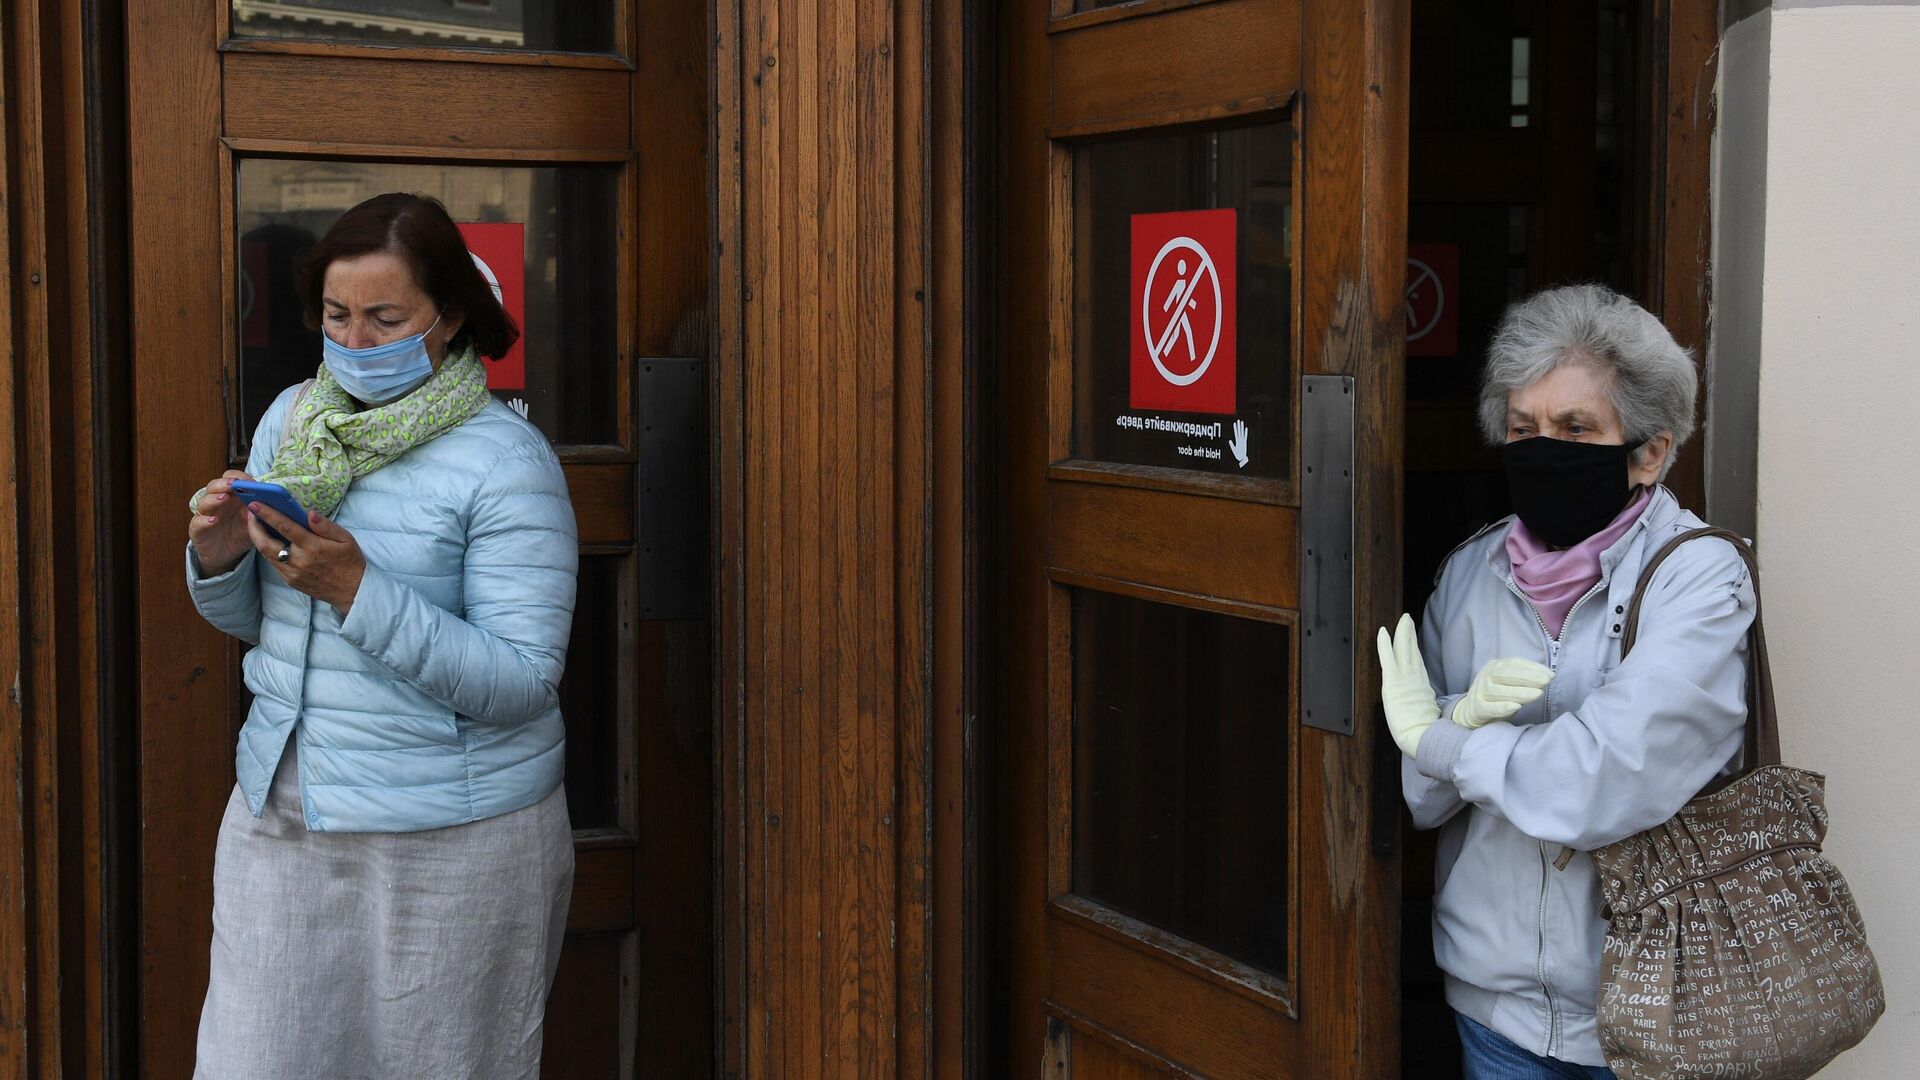 Пассажиры в медицинских масках выходят из вестибюля станции метро Парк культуры в Москве - РИА Новости, 1920, 25.09.2020